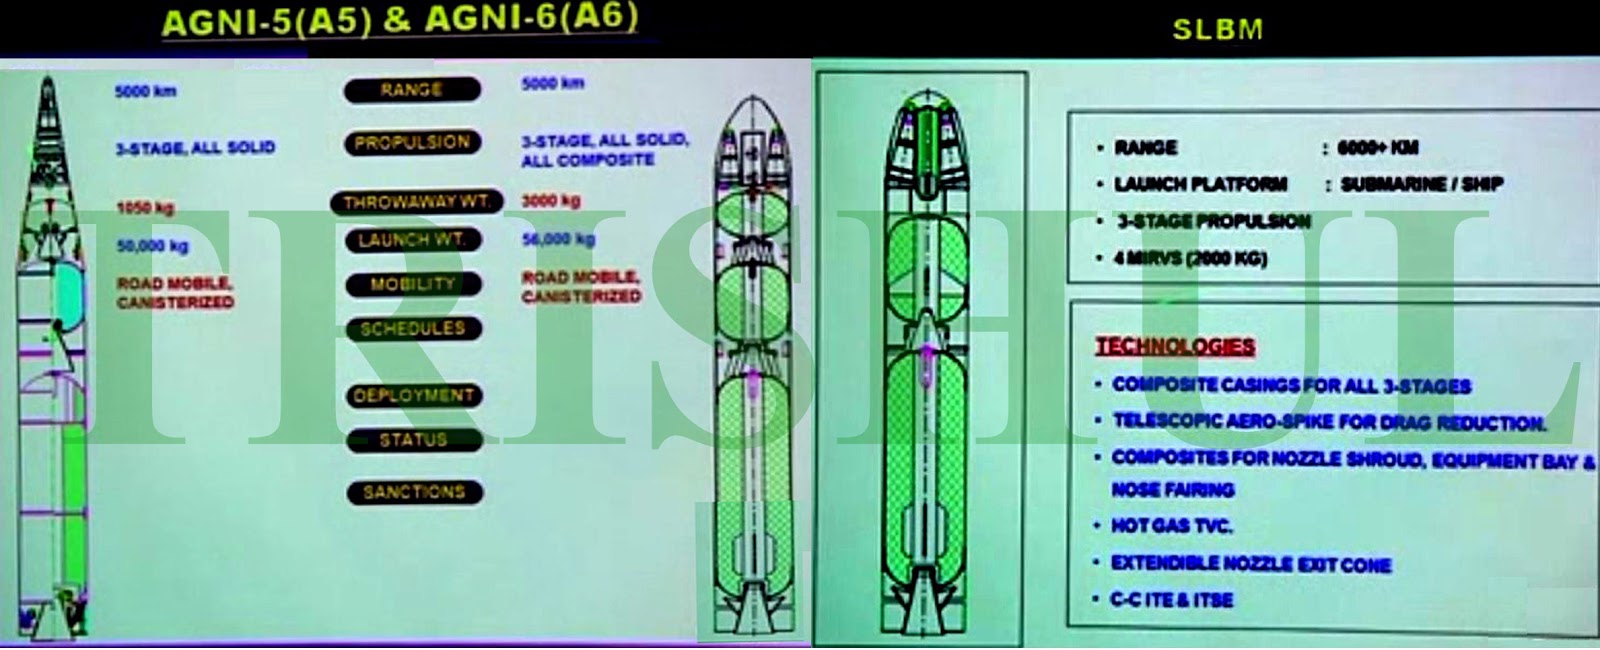 India's A-6 ICBM & K-06 SLBM.jpg